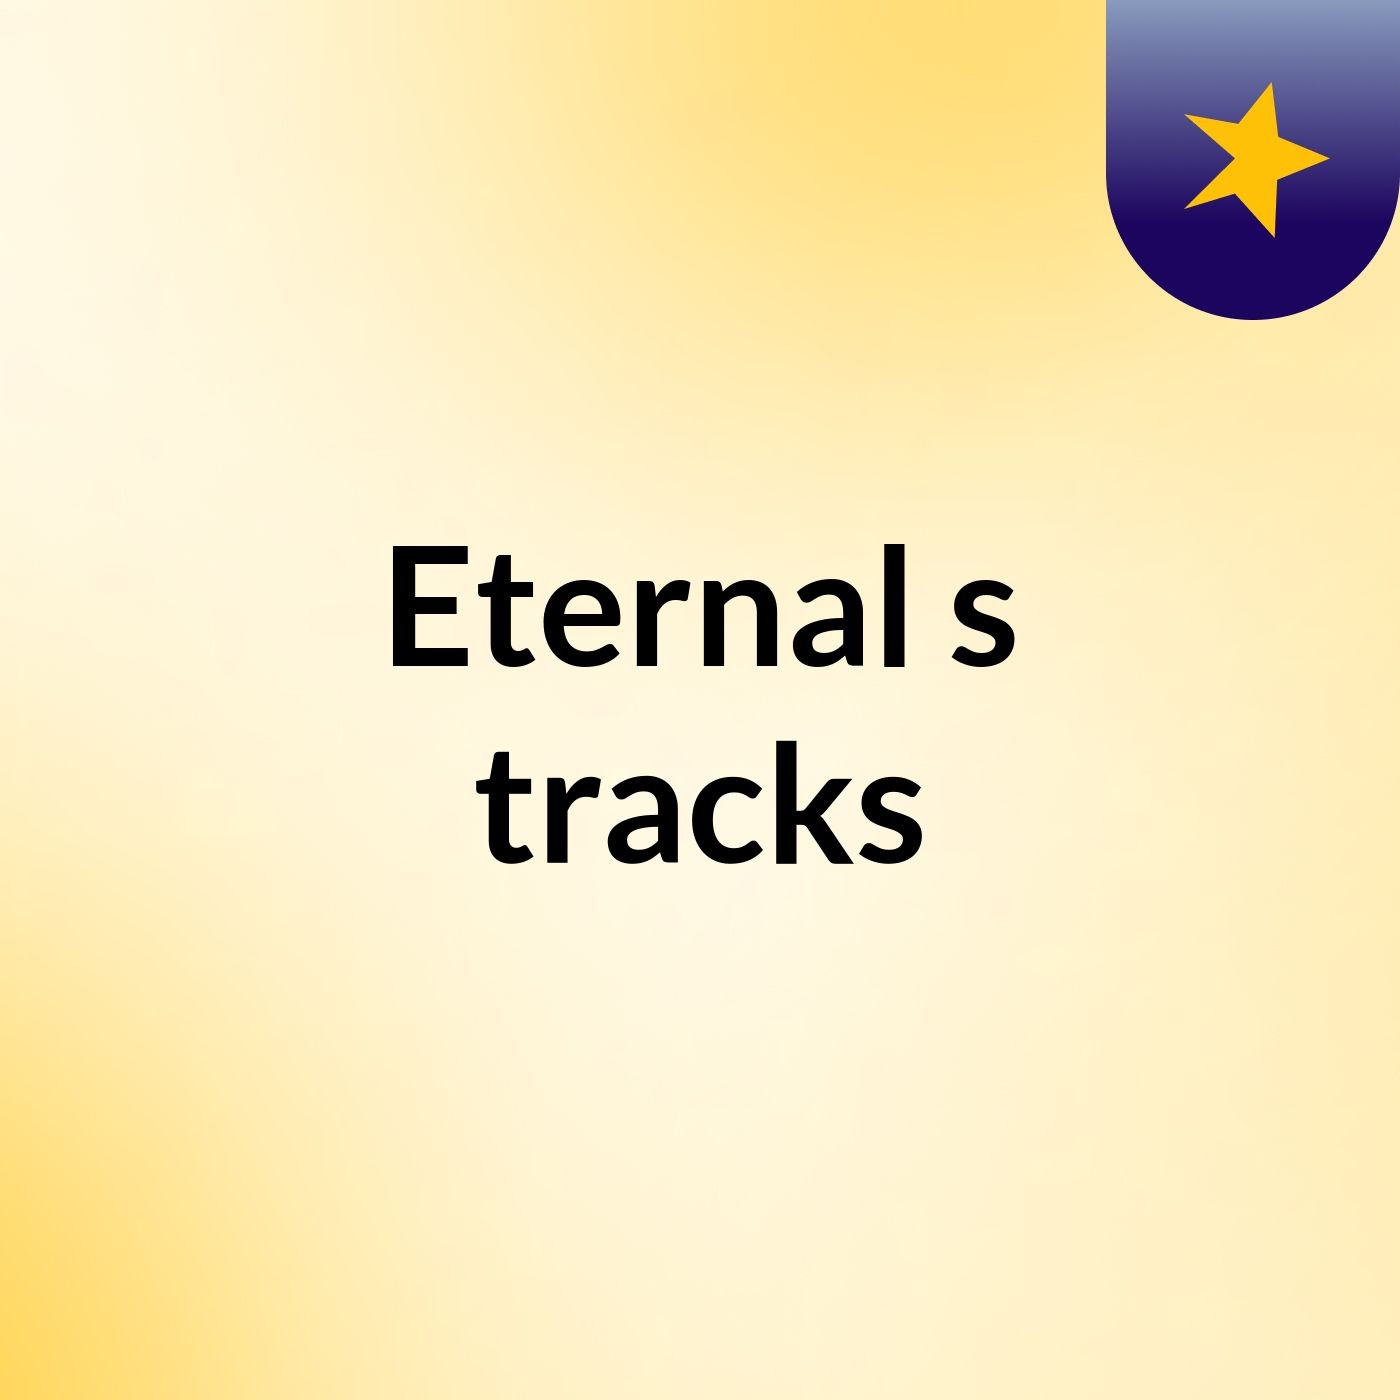 Eternal's tracks